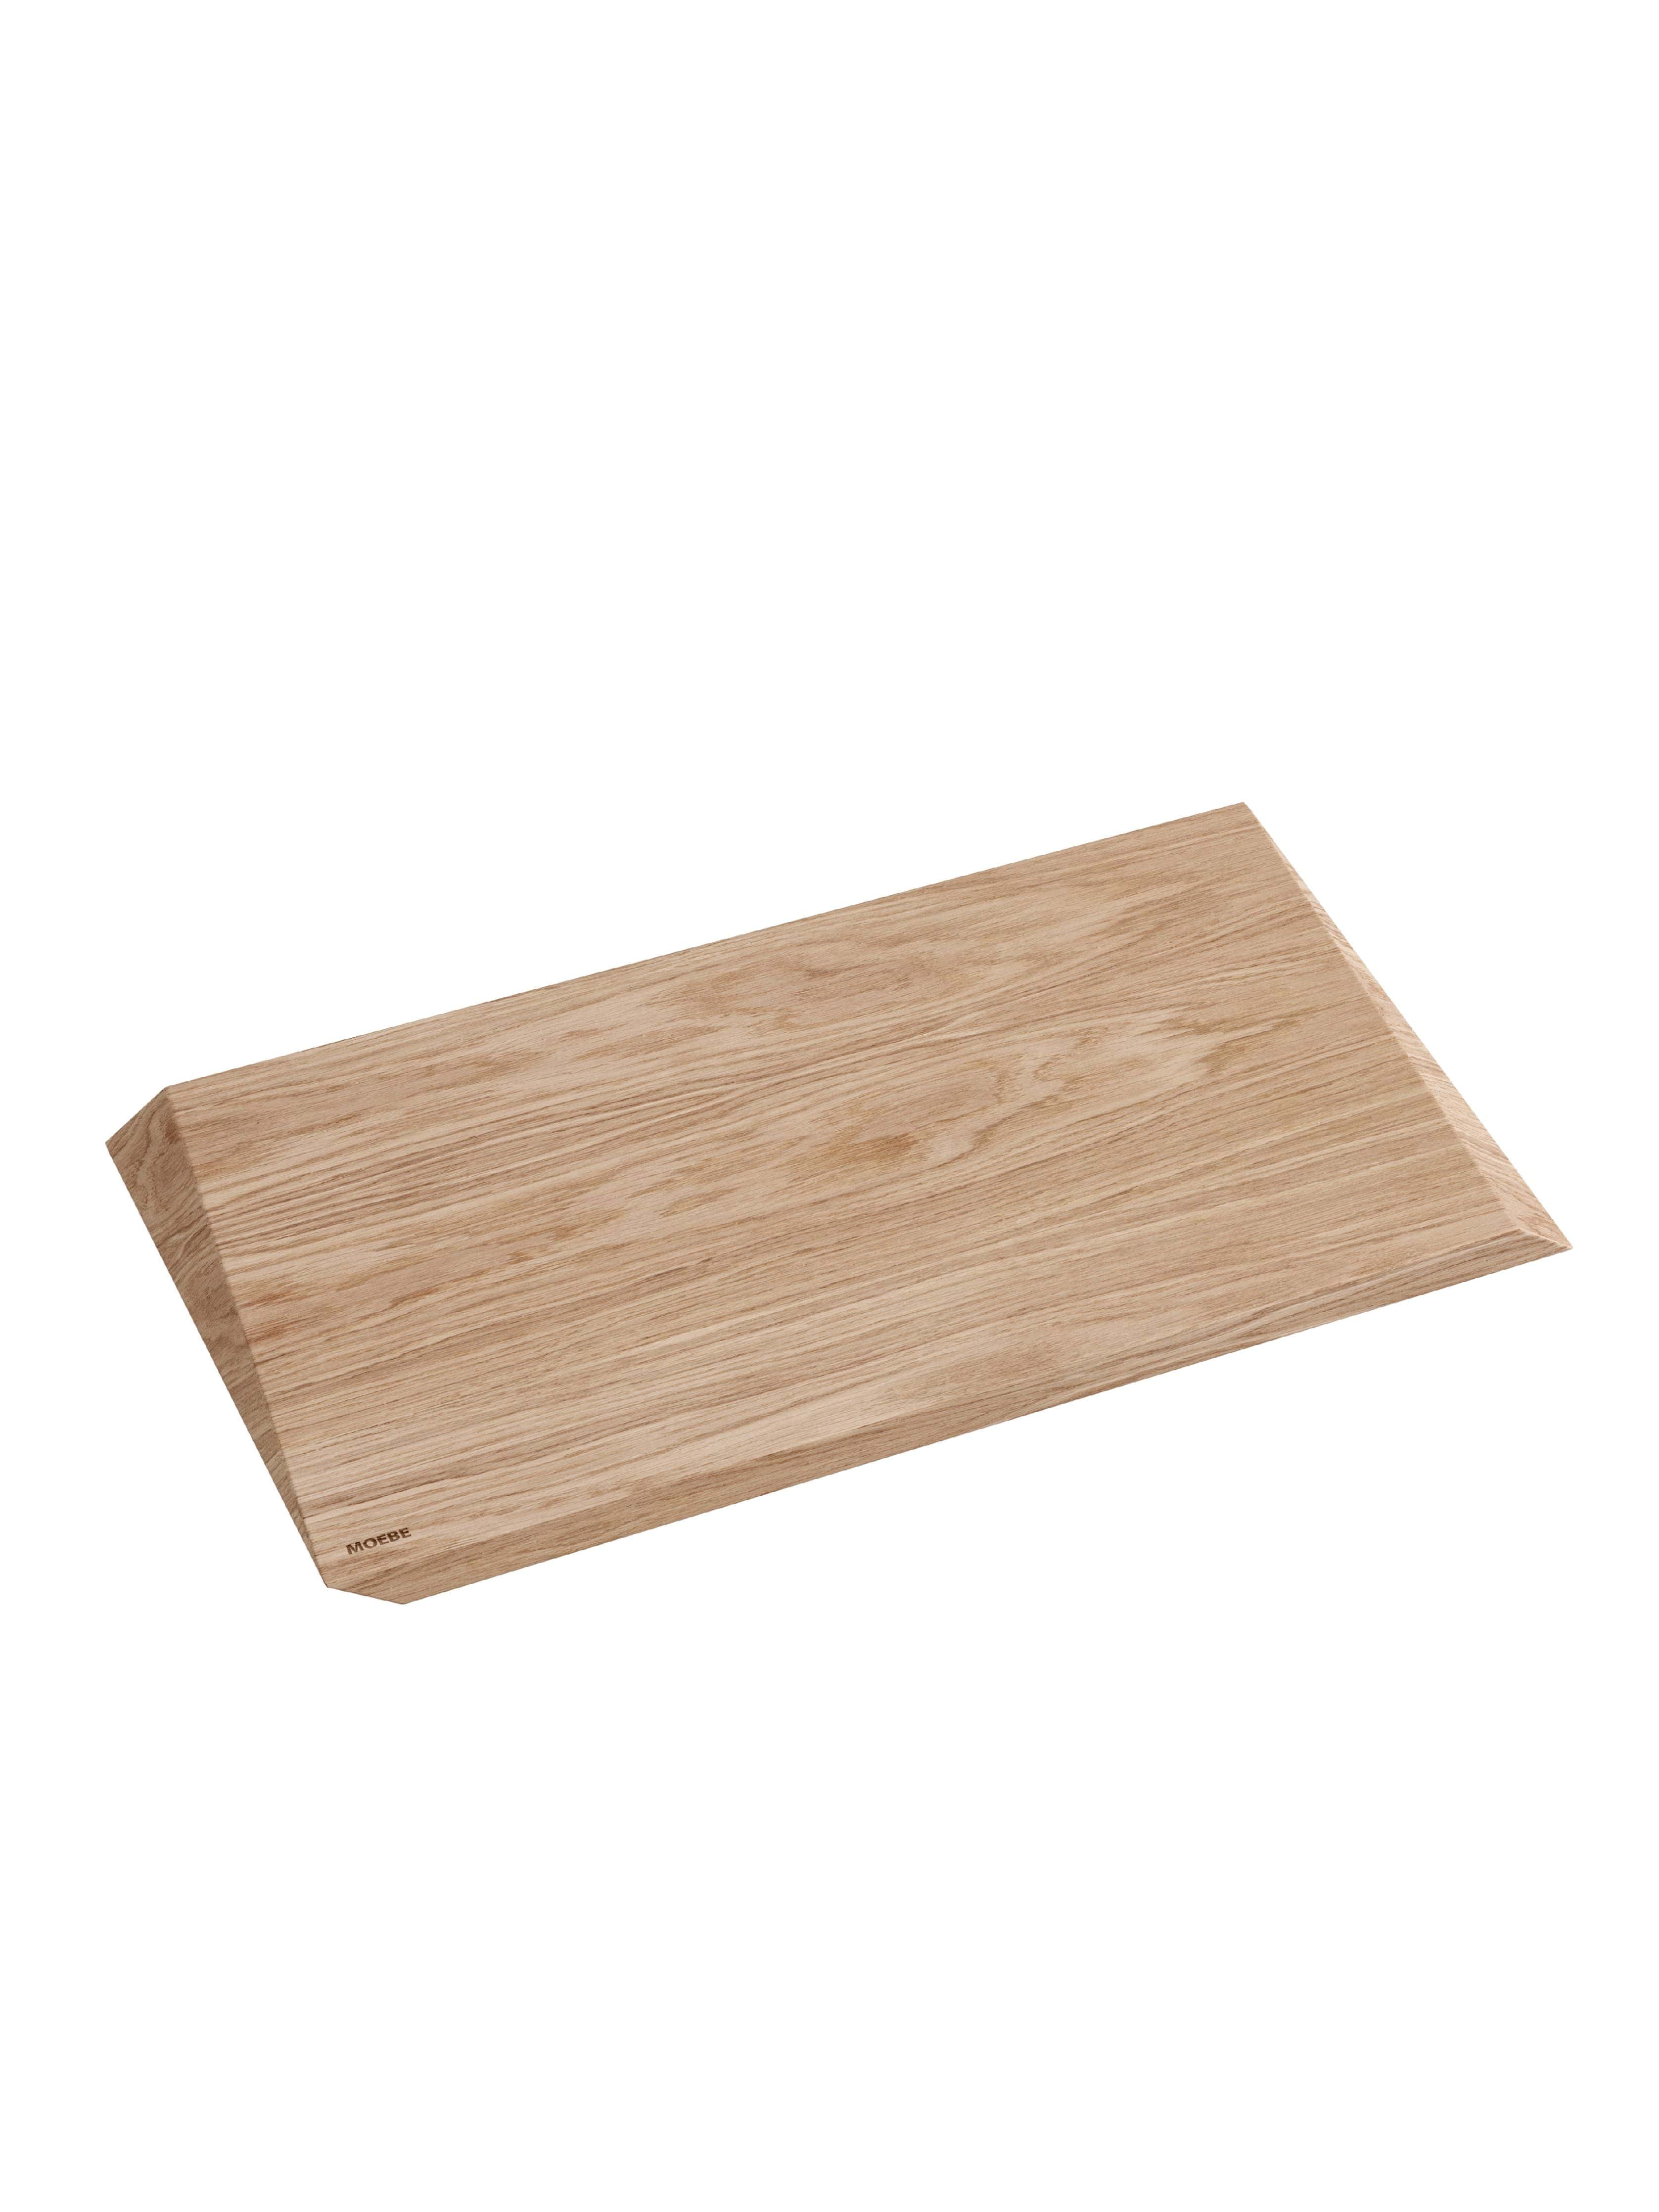 Moebe Cutting Board, Large